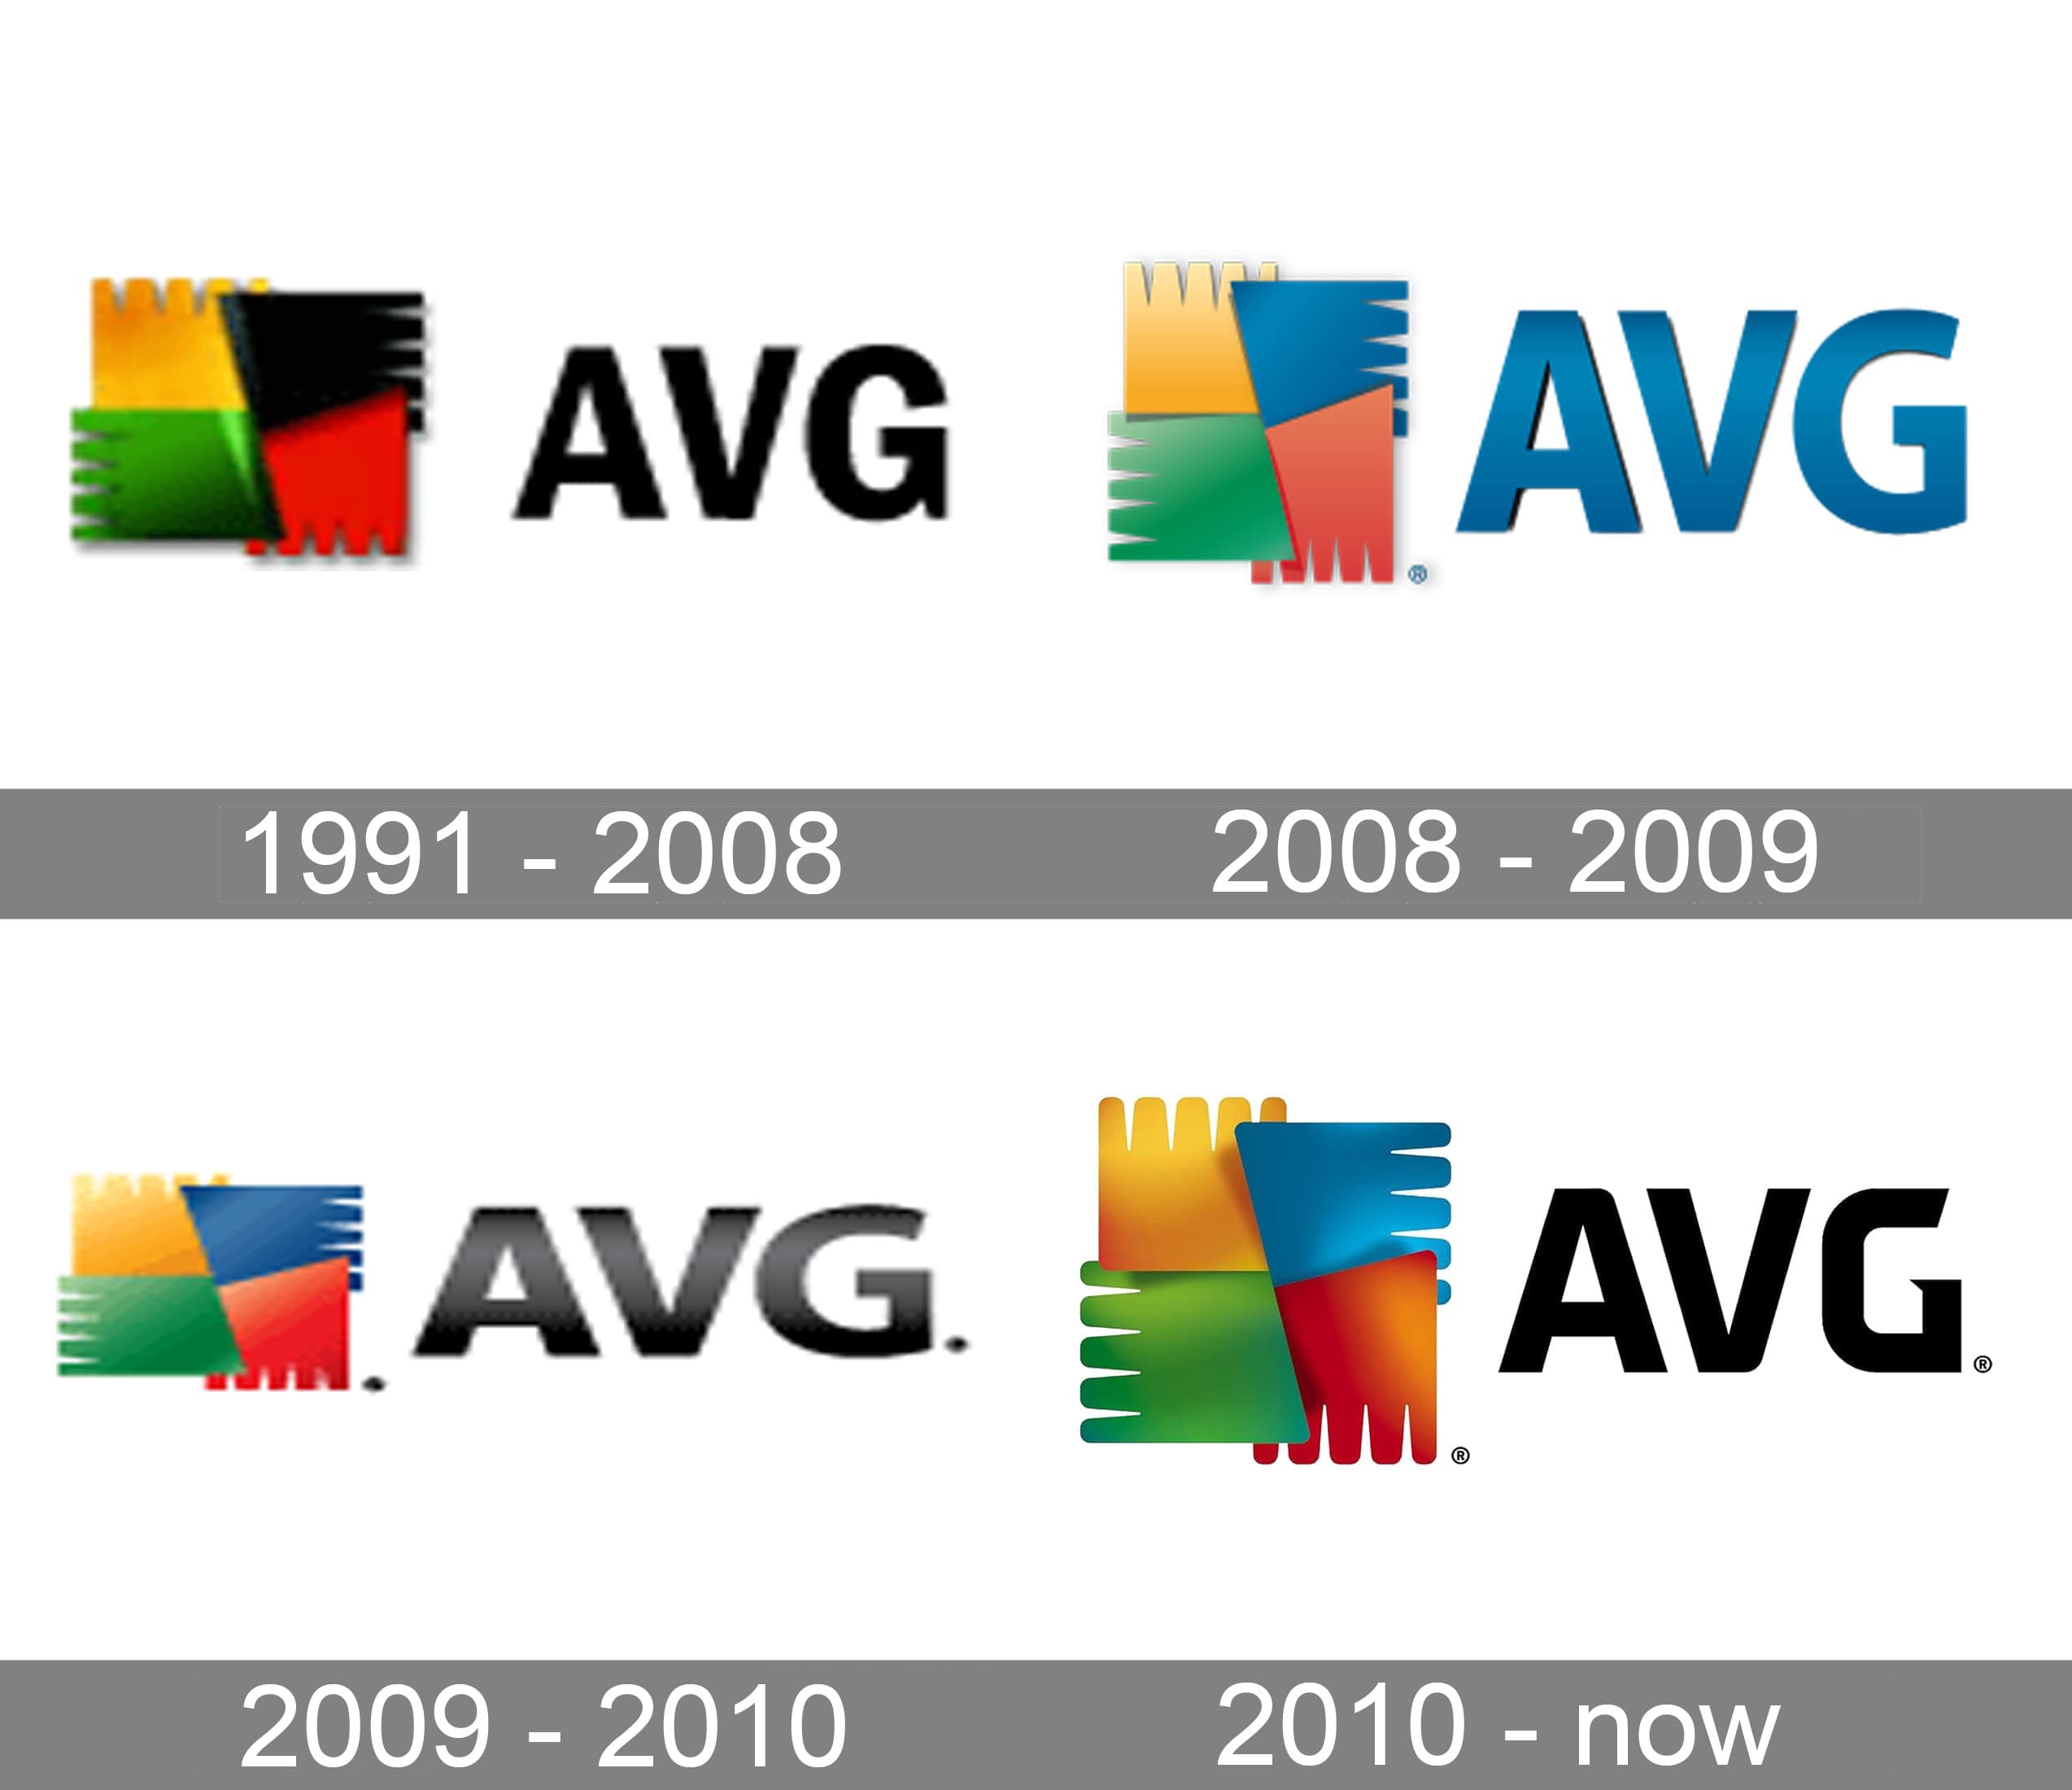 anti virus software logos